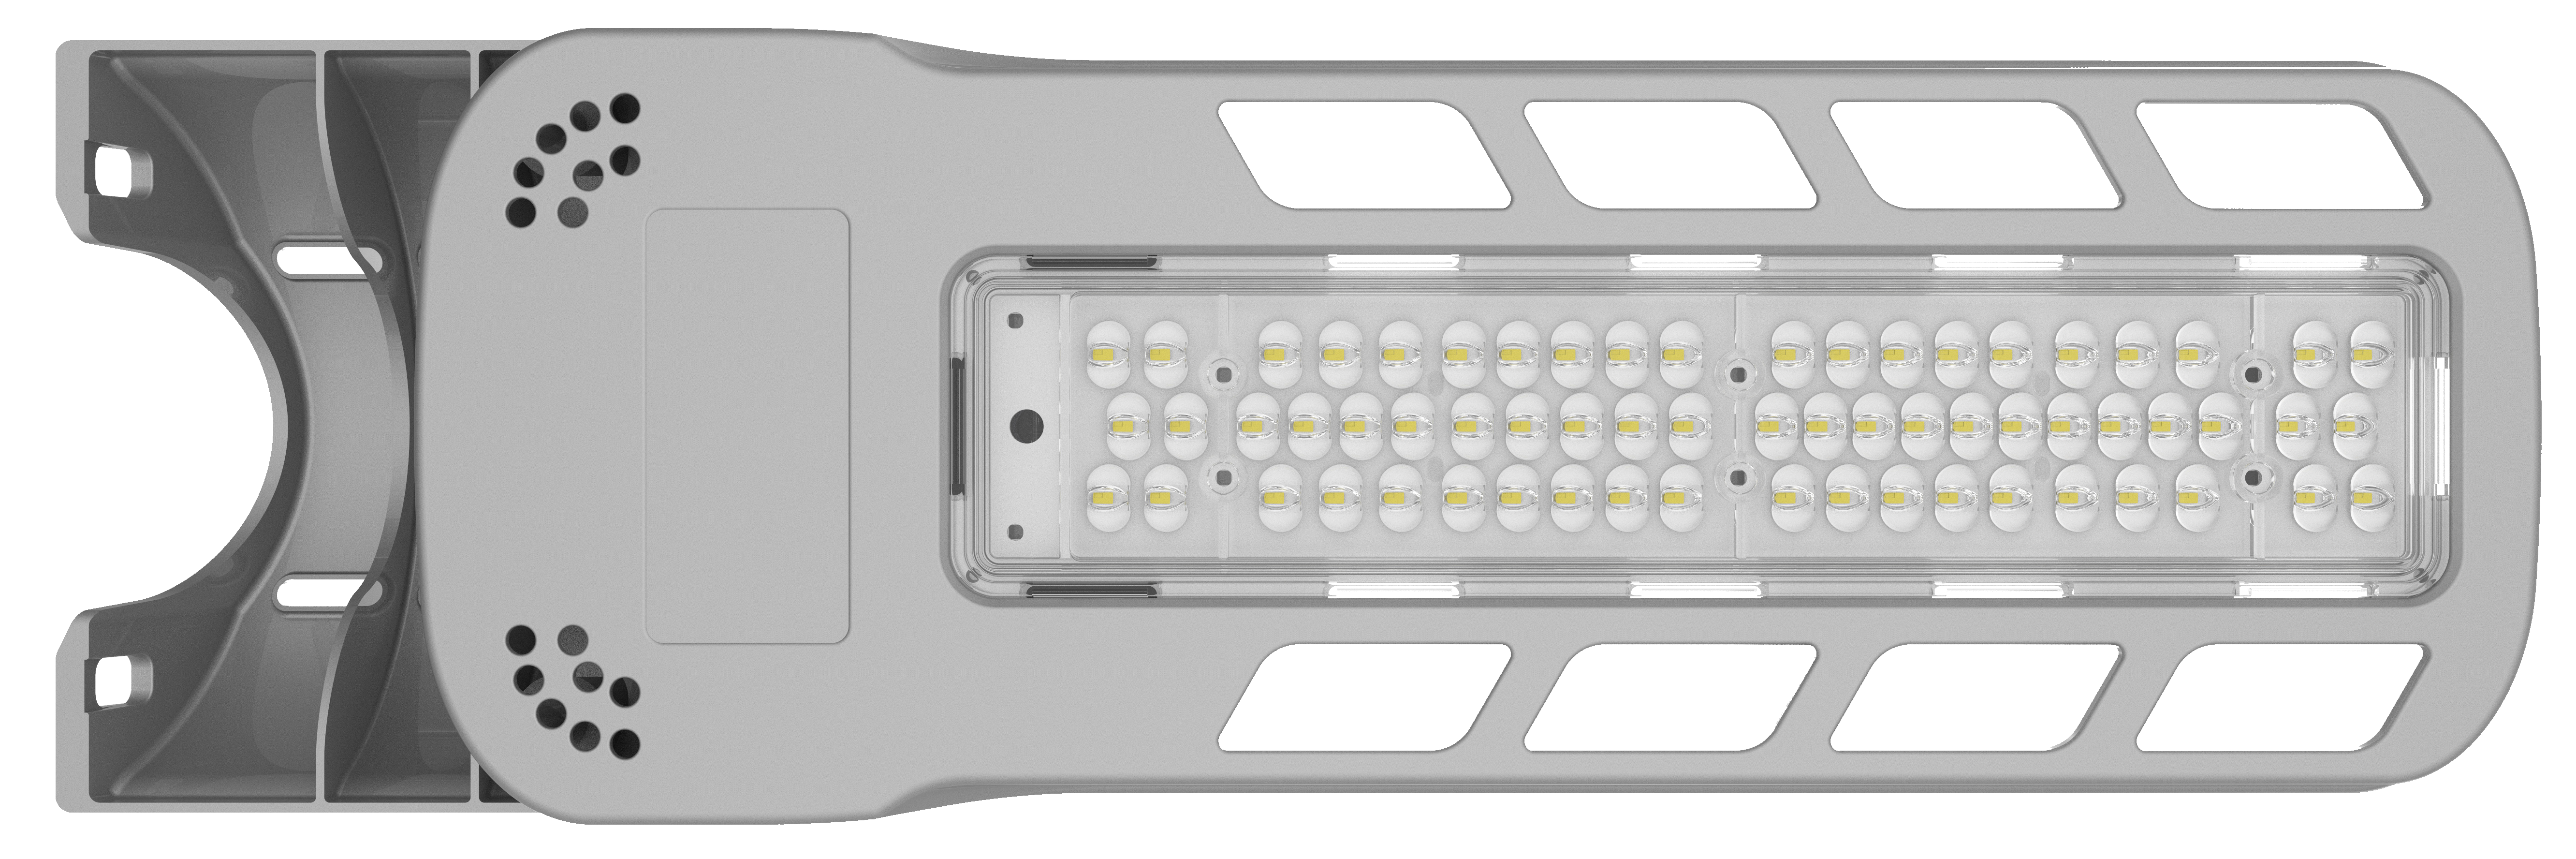 مصباح الشارع LED من النوع الخارجي سلسلة RK 